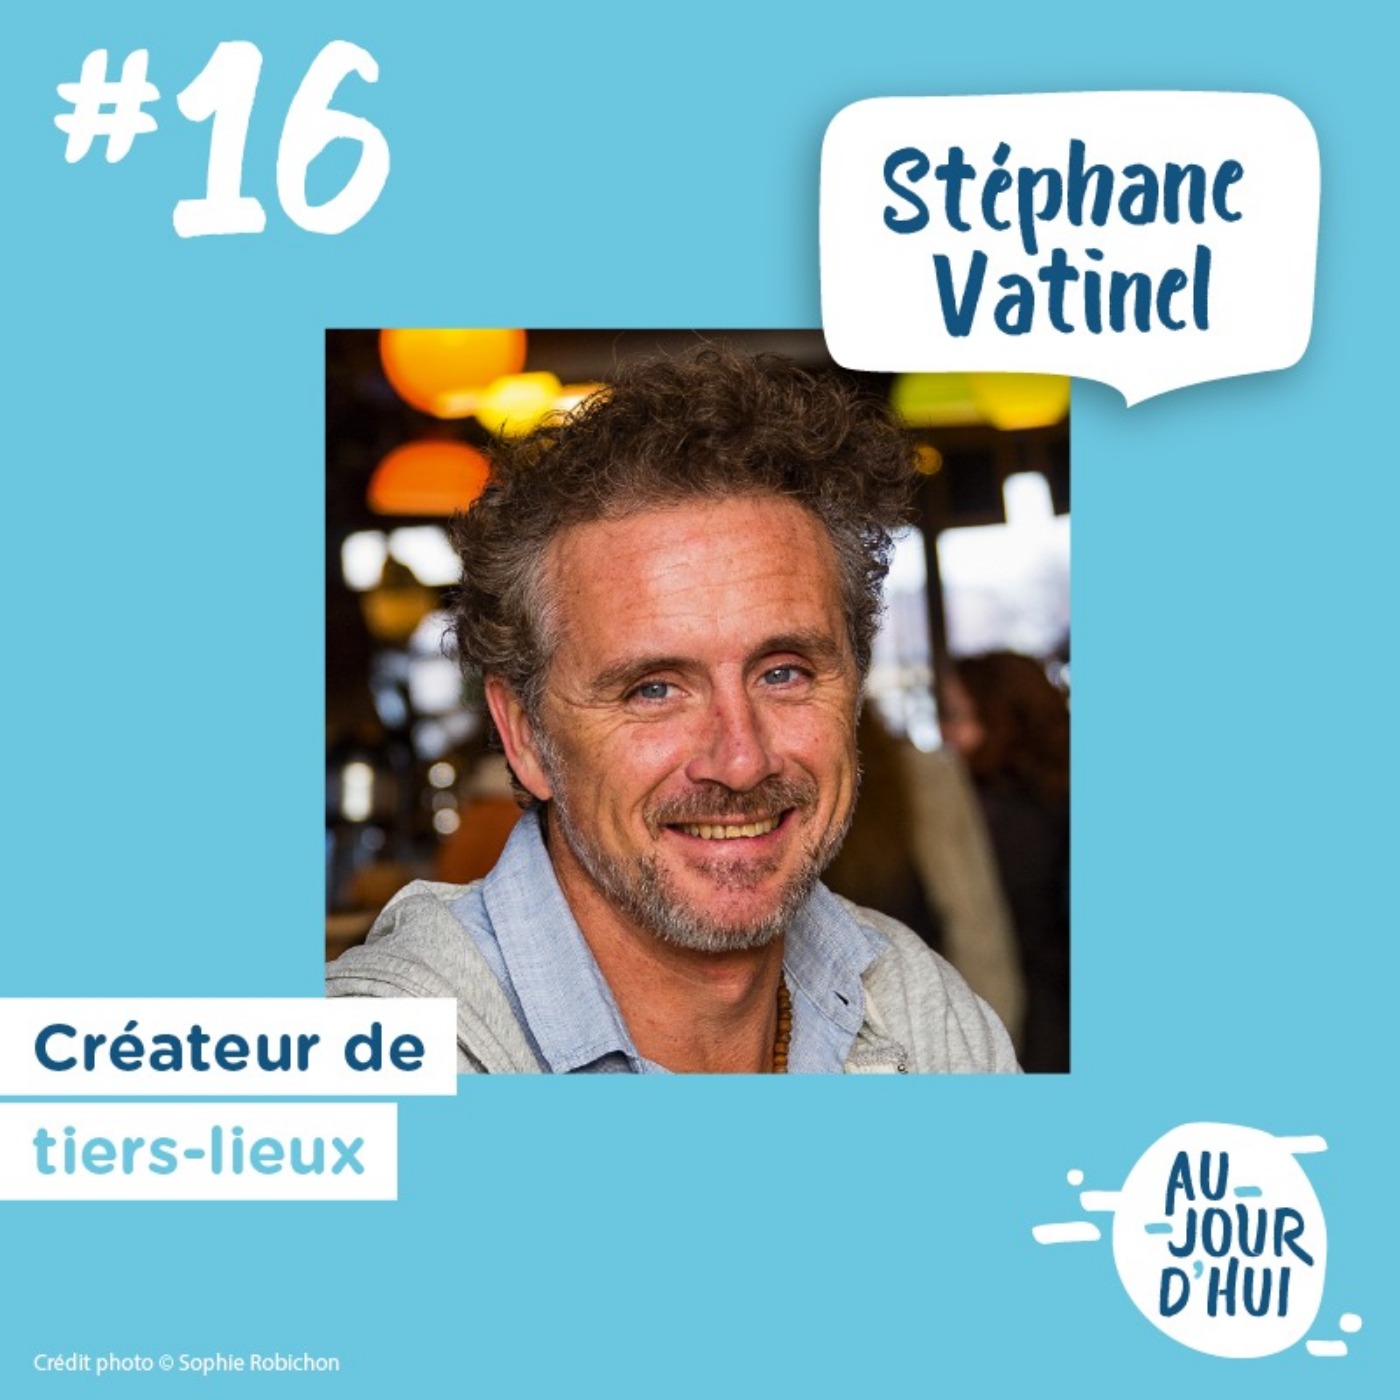 #16 Stéphane Vatinel “Des tiers-lieux pour rendre la ville plus inclusive et participative”